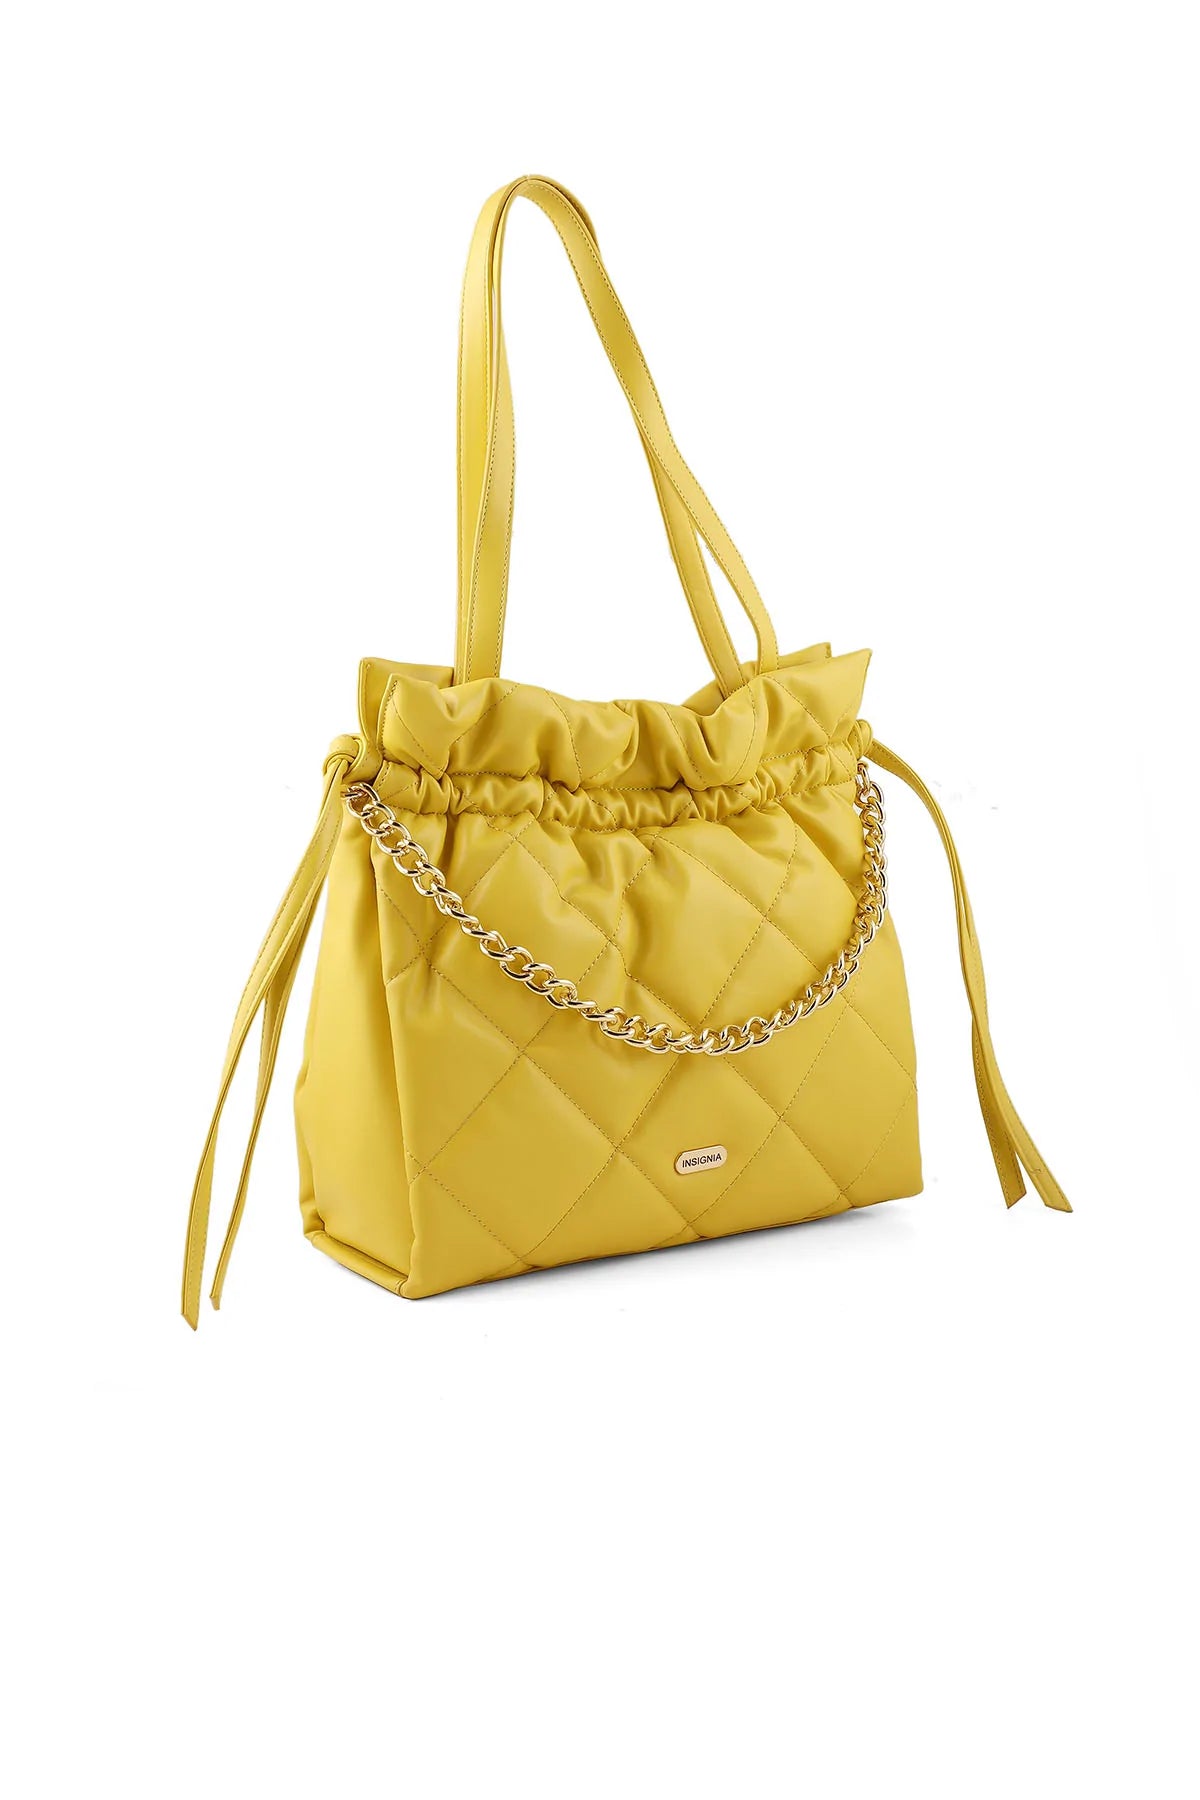 Bucket Hand Bags B15007-Yellow